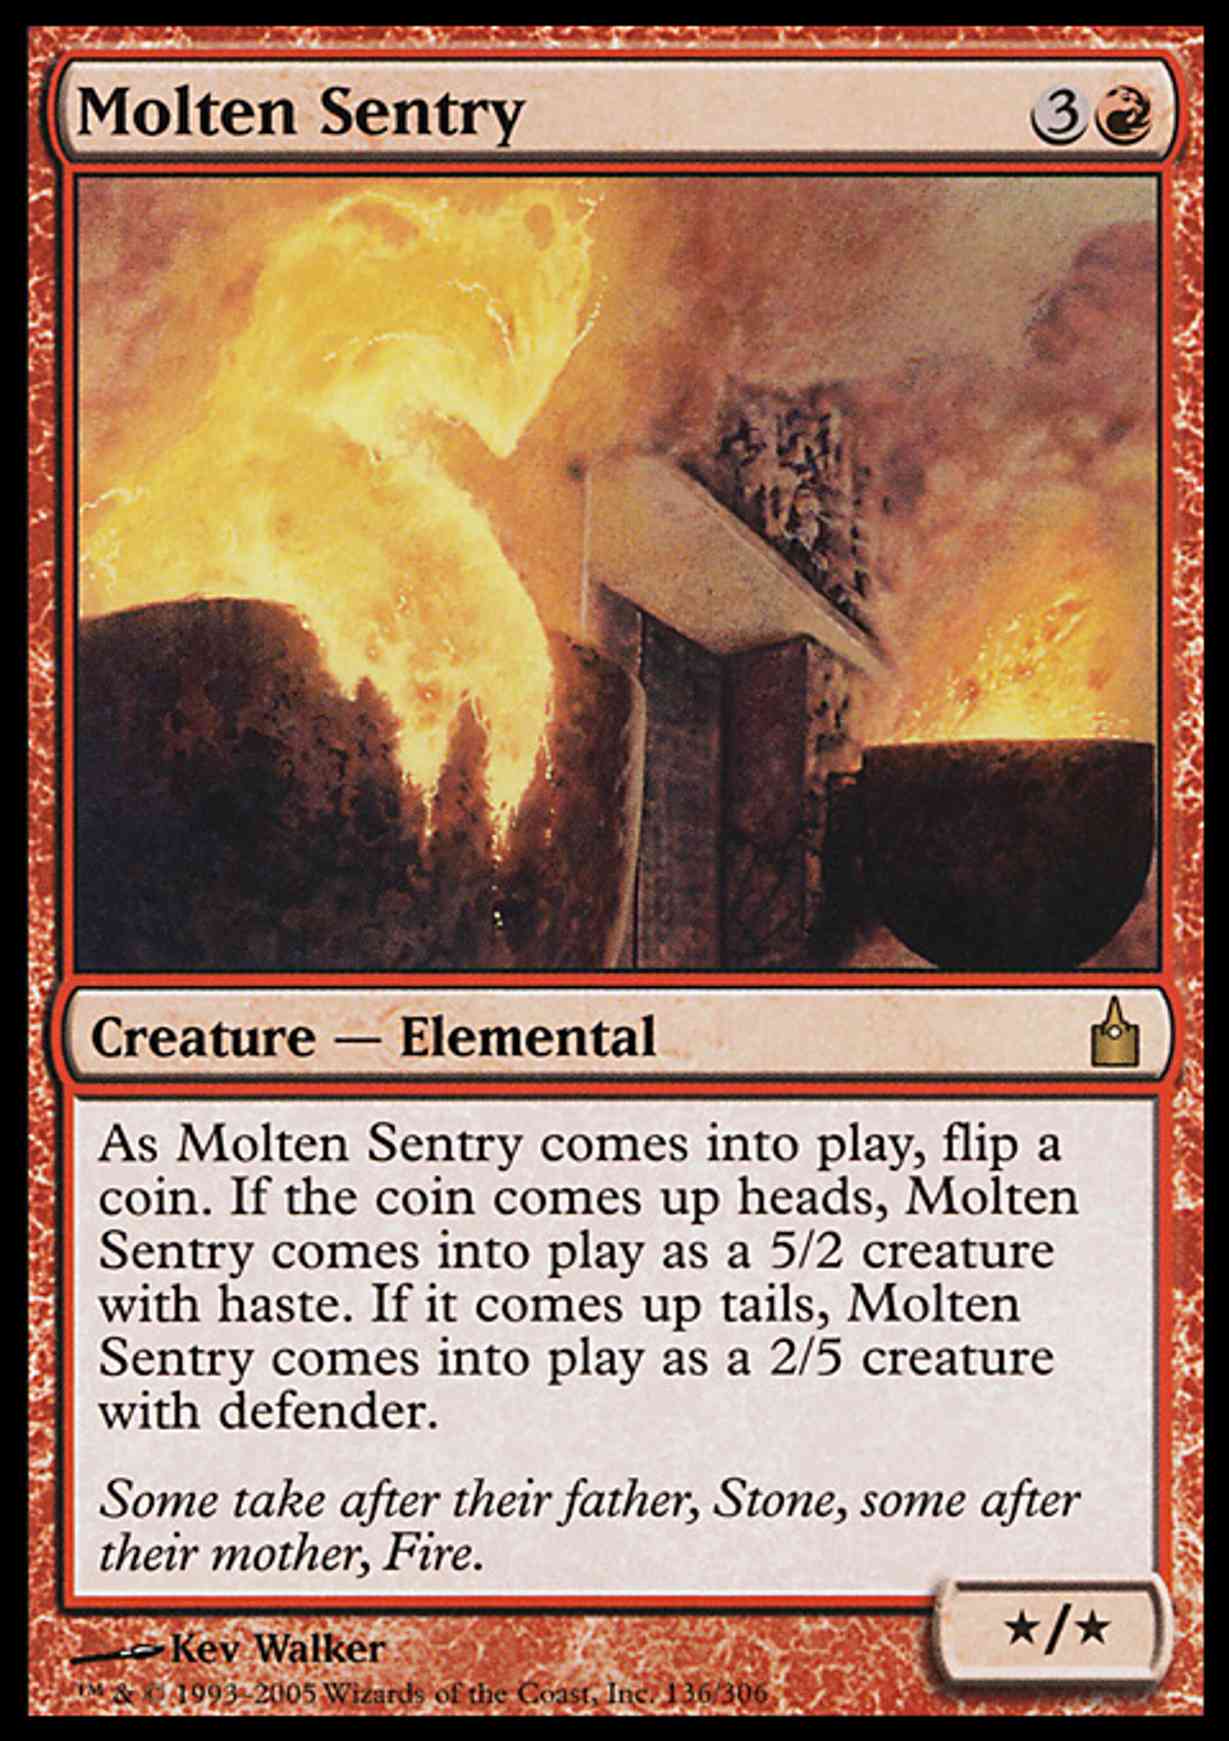 Molten Sentry magic card front